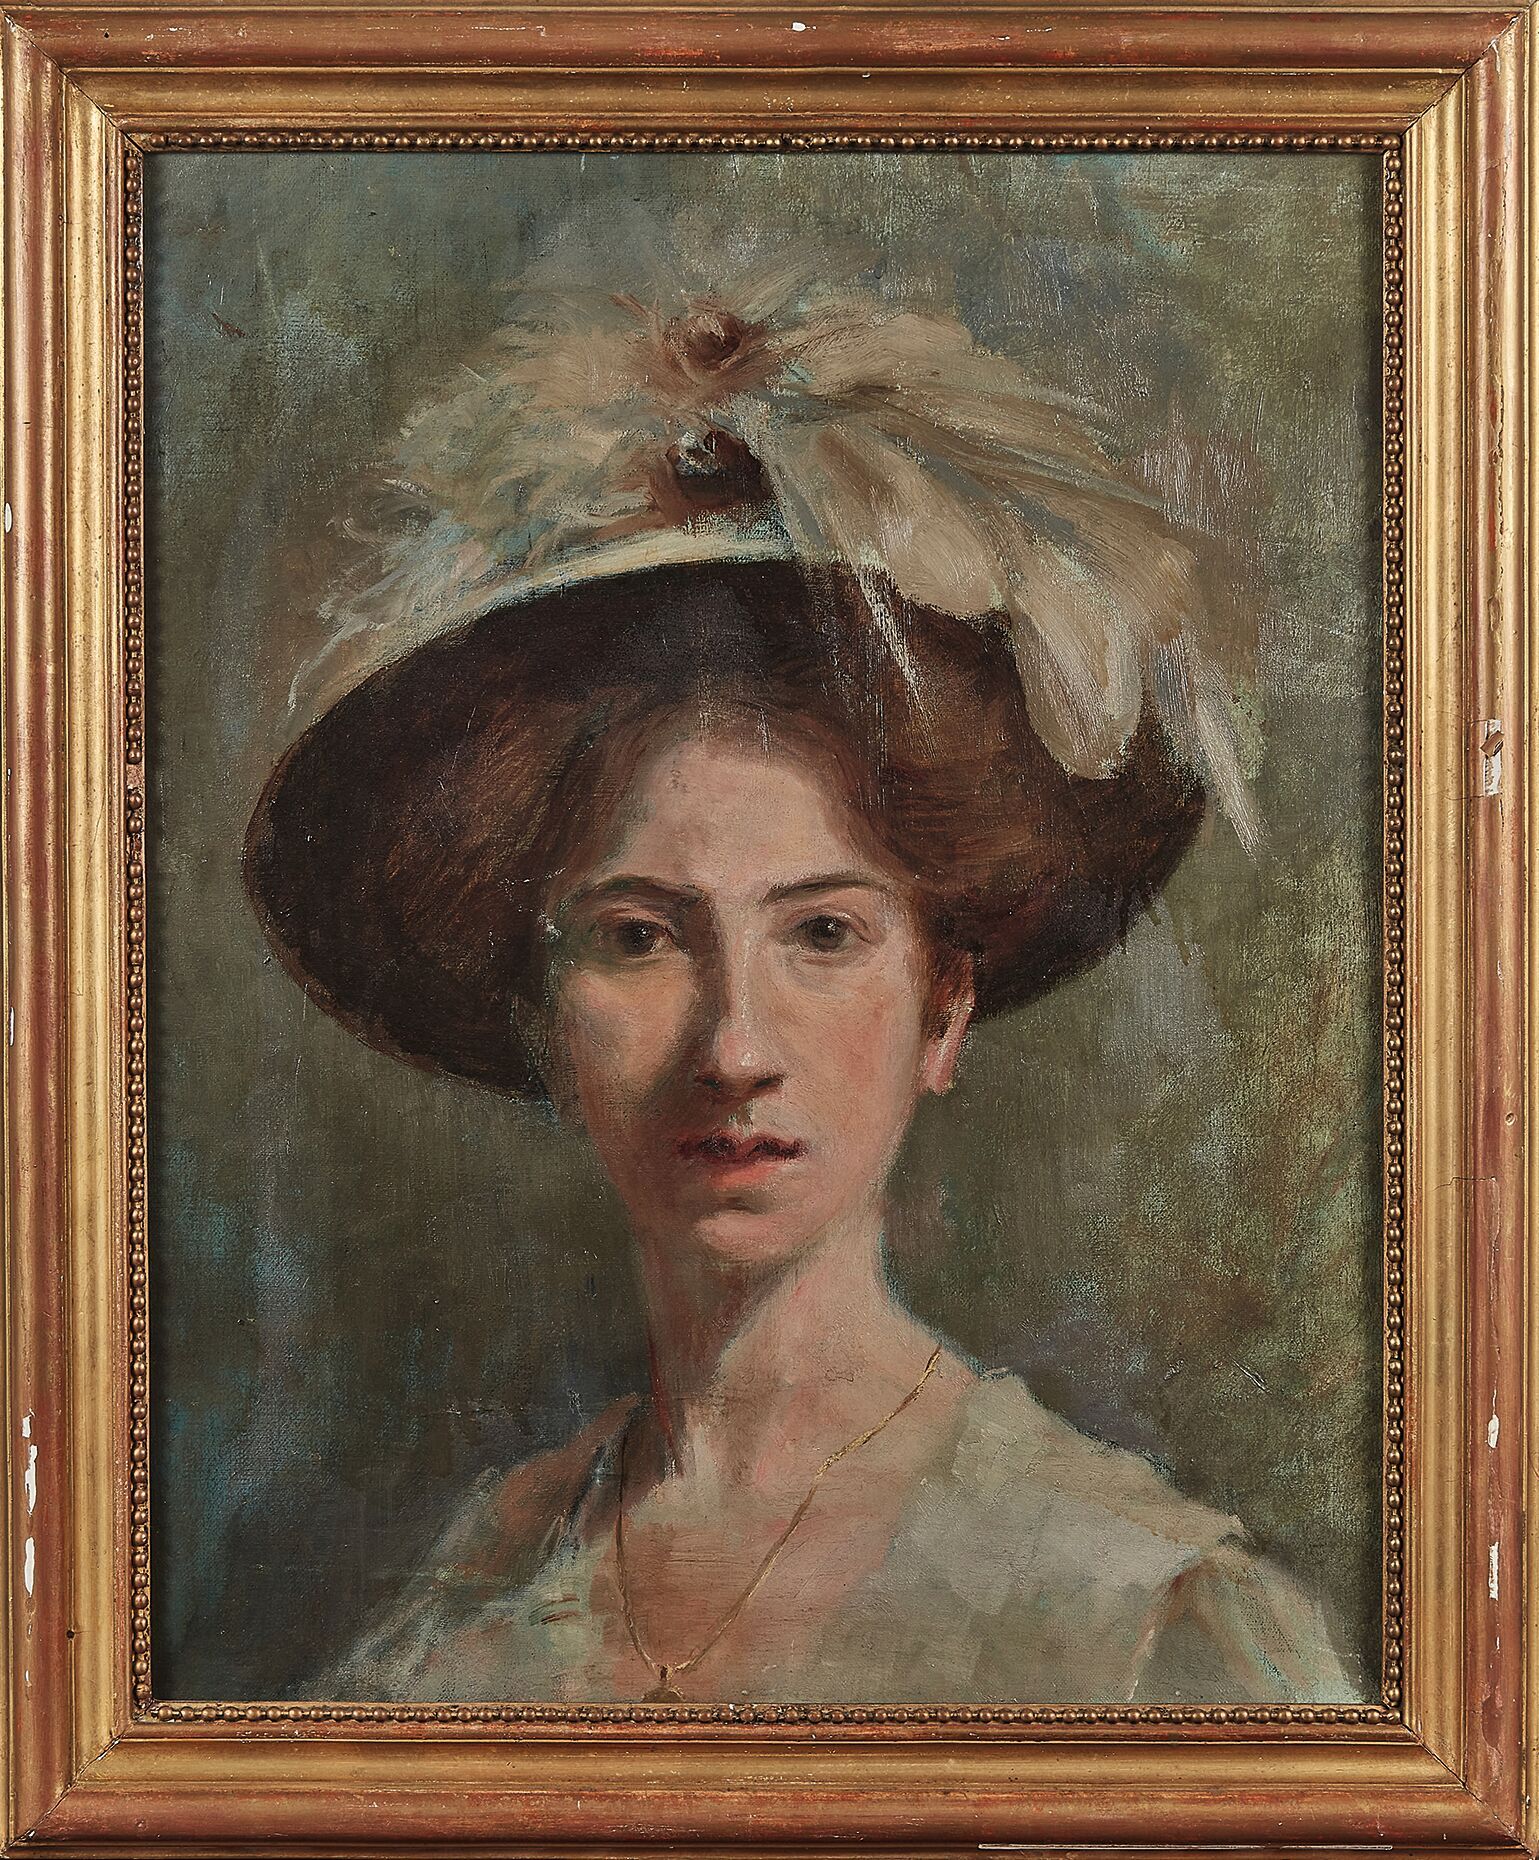 Null SCUOLA MODERNA
Ritratto di donna con cappello
Olio su tela.
55 x 46 cm